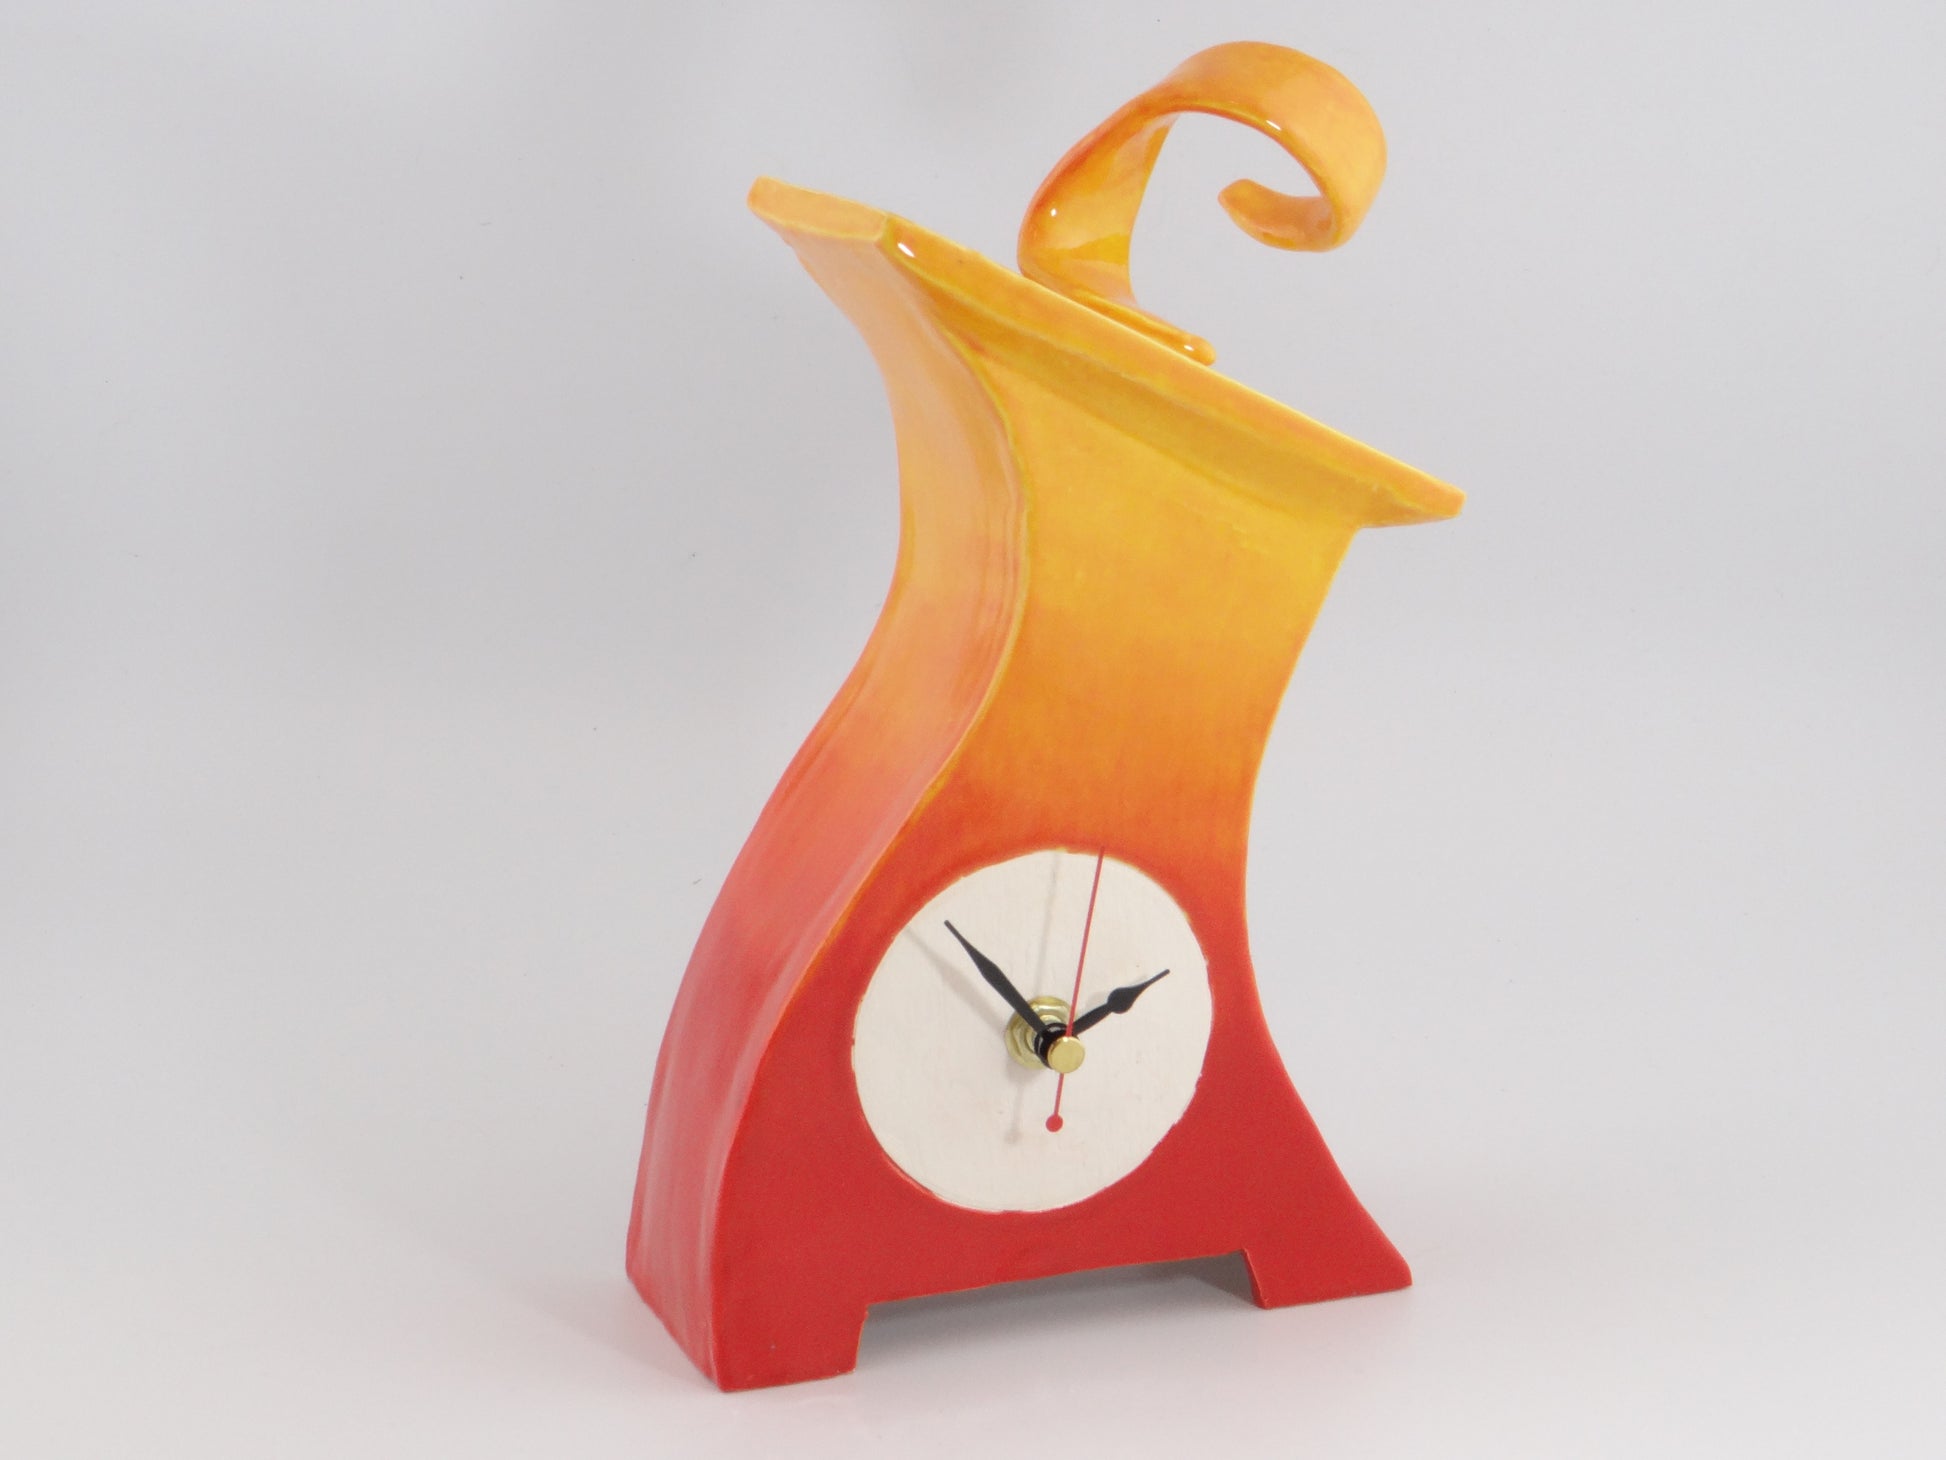 Handmade Mantel Clock - PeterBowenArt